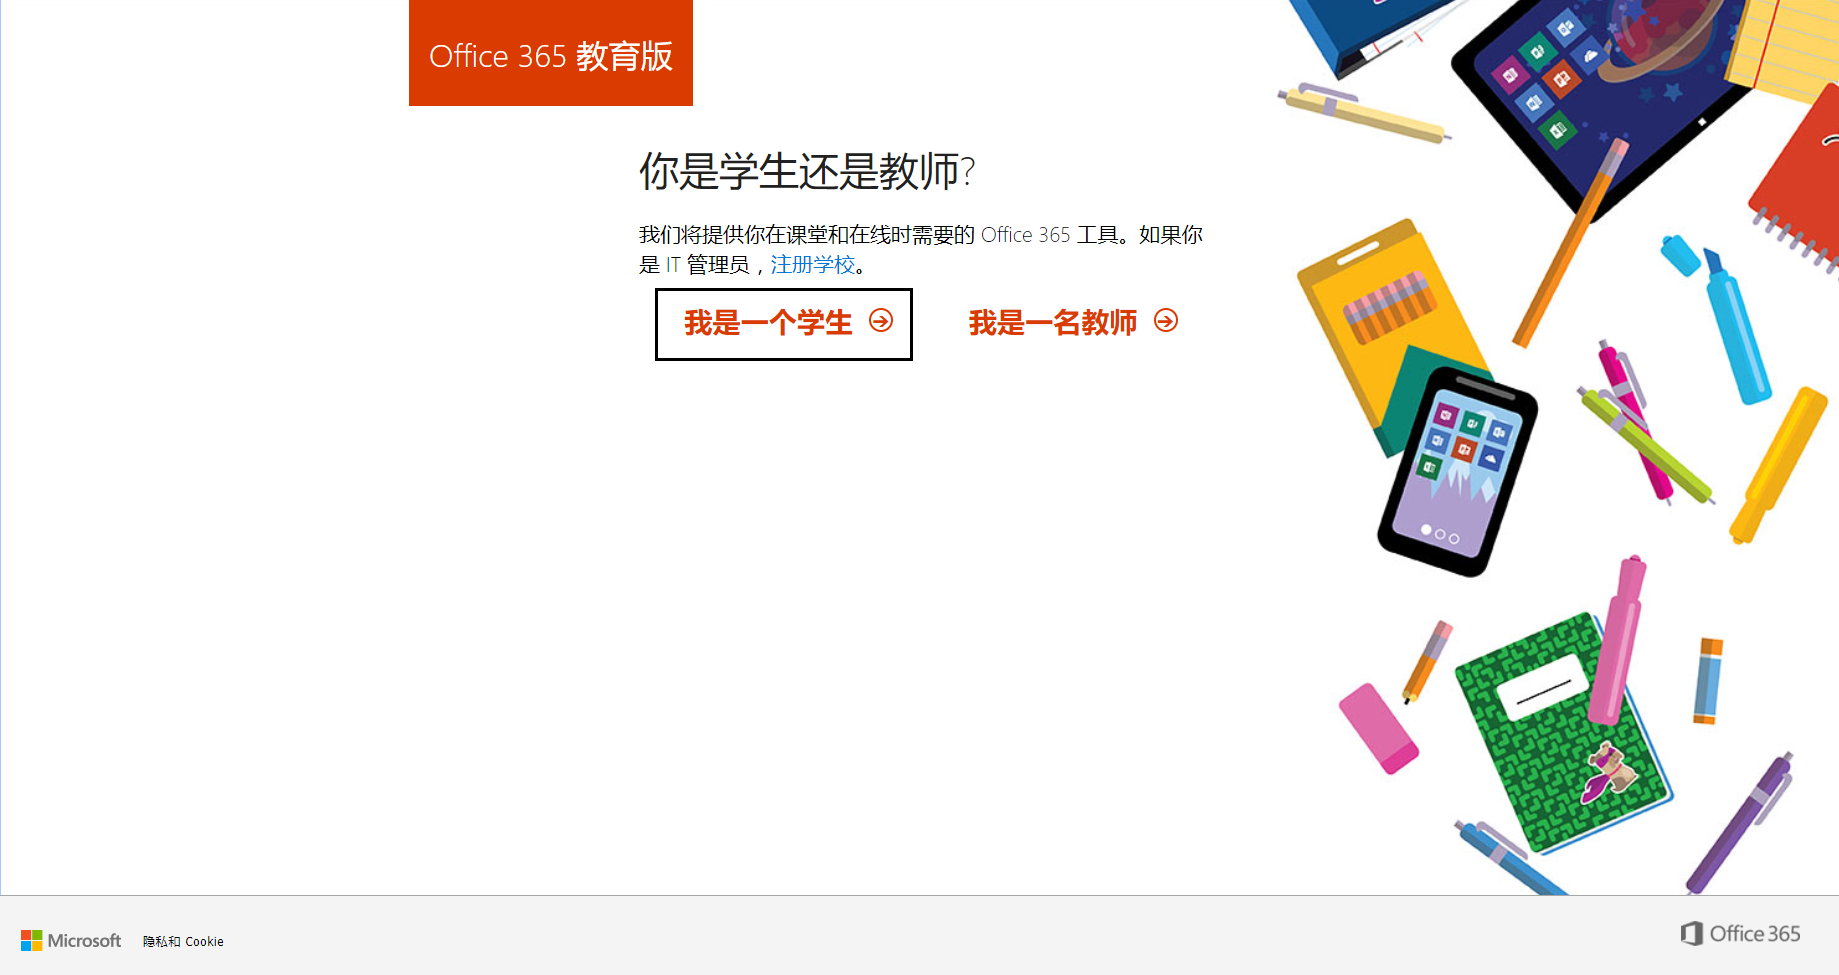 免费开放申请 Office 365 A1 帐号 / OneDrive 5TB 网盘